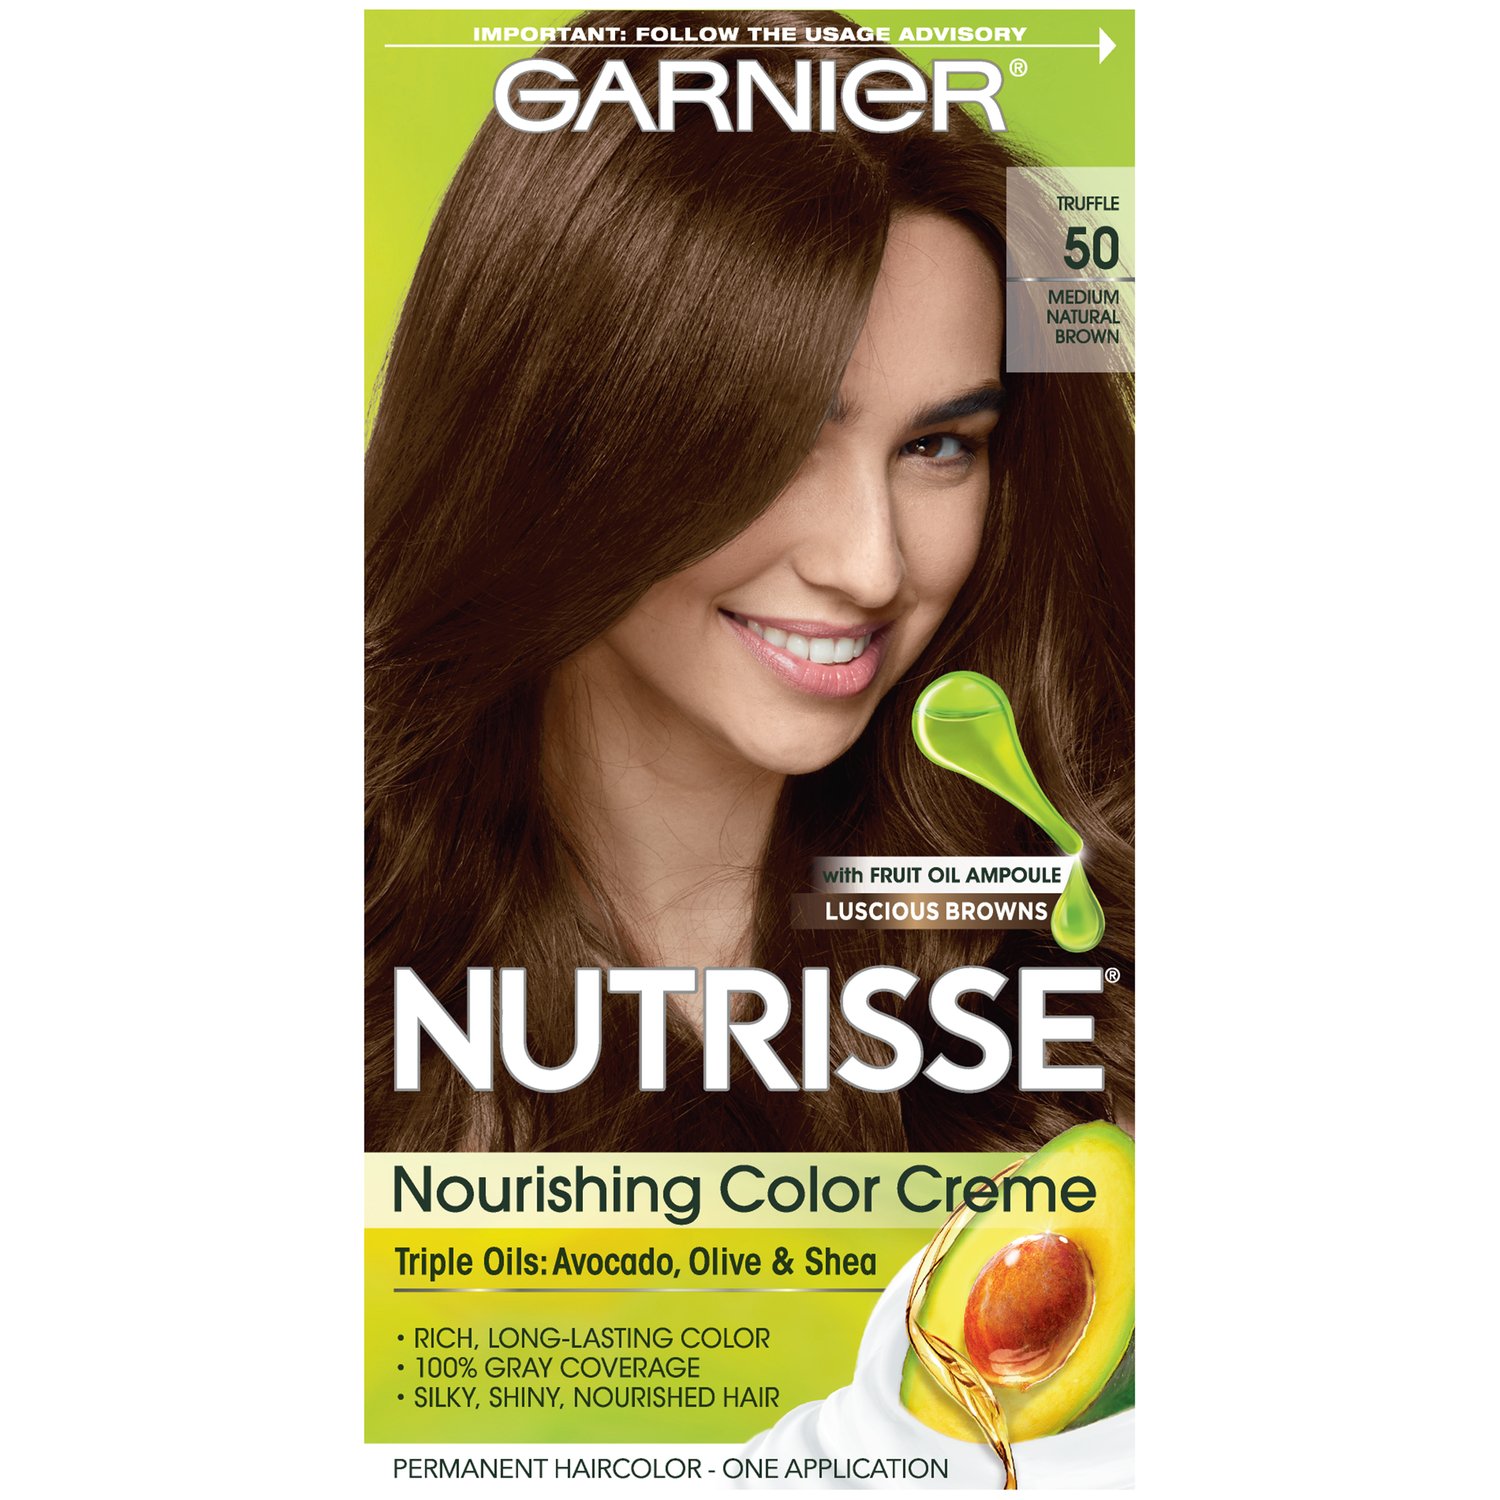 Mua Garnier Nutrisse Nourishing Hair Color Creme, 50 Medium Natural Brown  (Truffle) (Packaging May Vary) trên Amazon Mỹ chính hãng 2023 | Fado